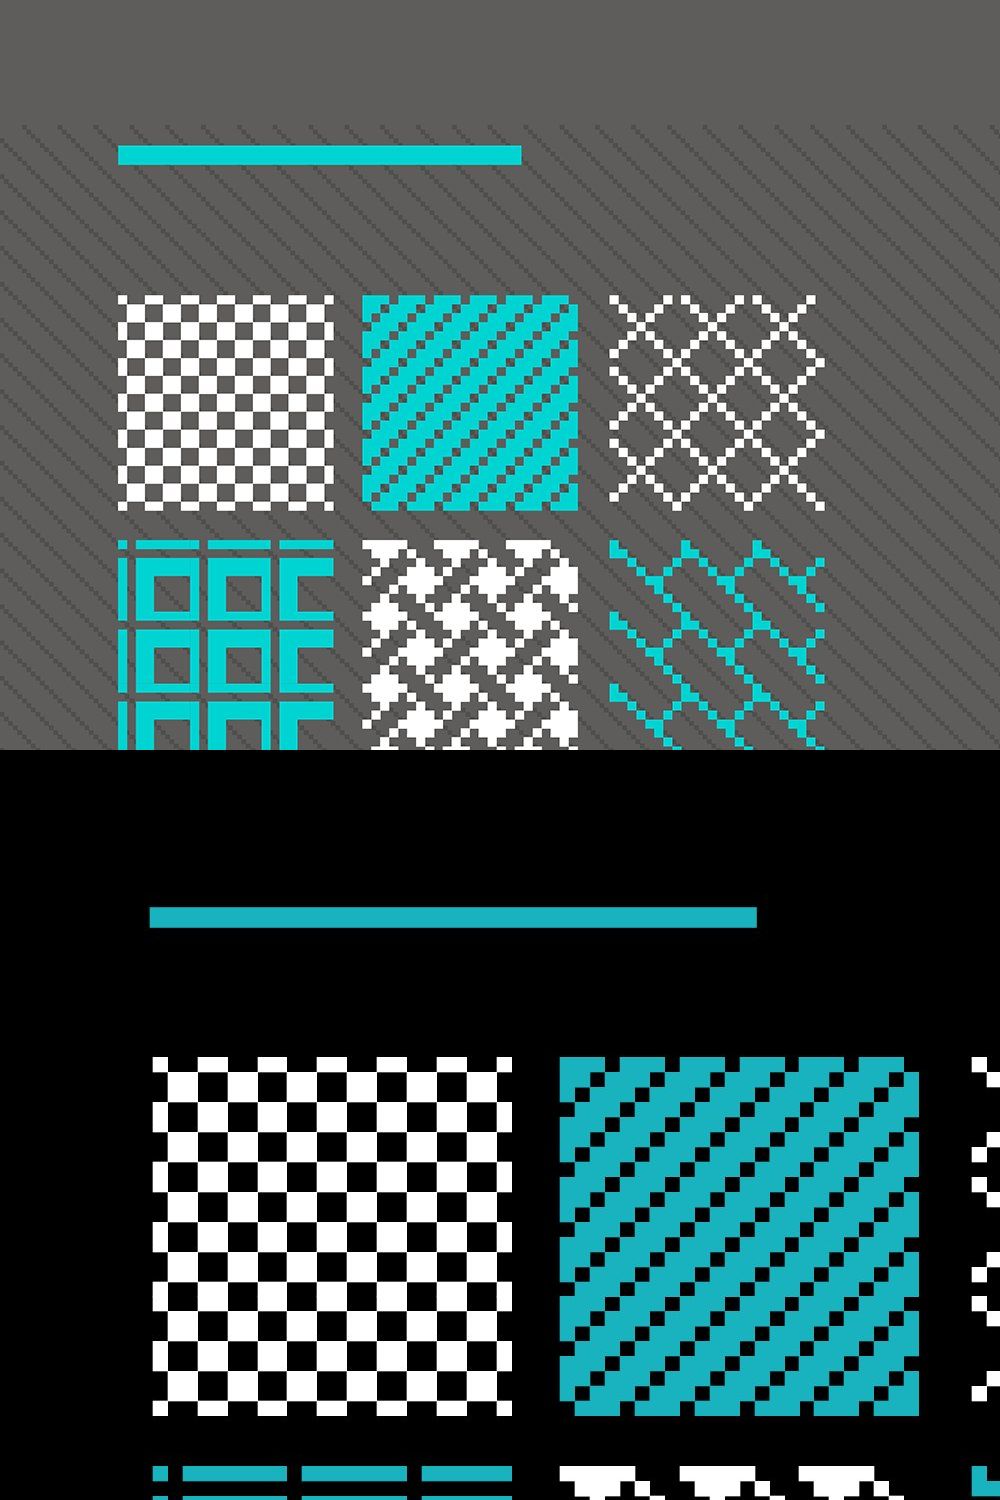 Pixelpaint Pixel art patterns pinterest preview image.